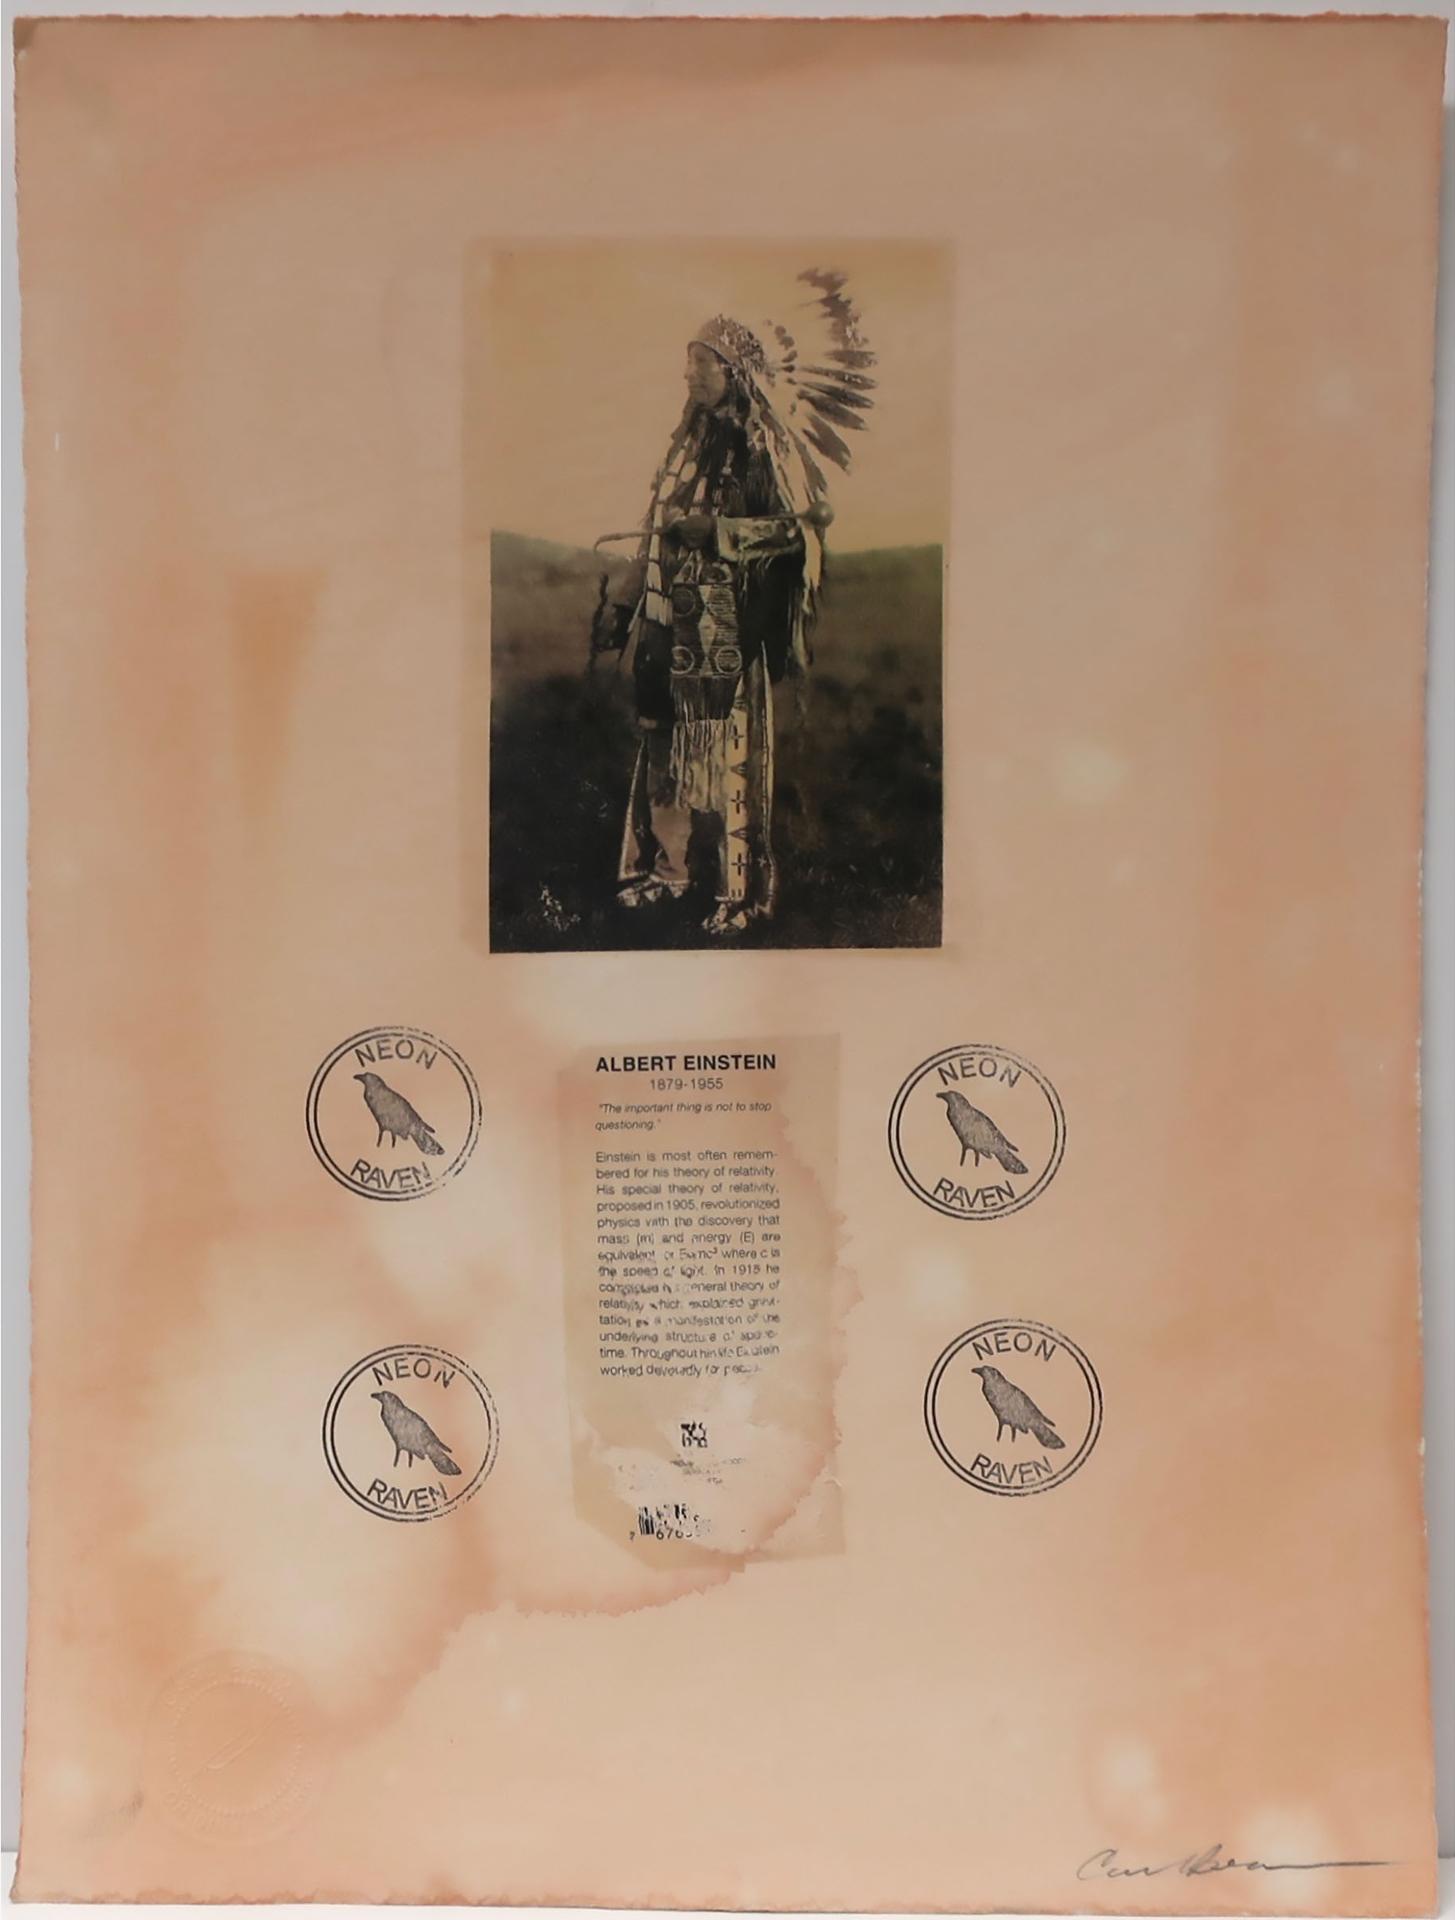 Carl Beam (1943-2005) - Untitled (Indigenous Chief - Albert Einstein)